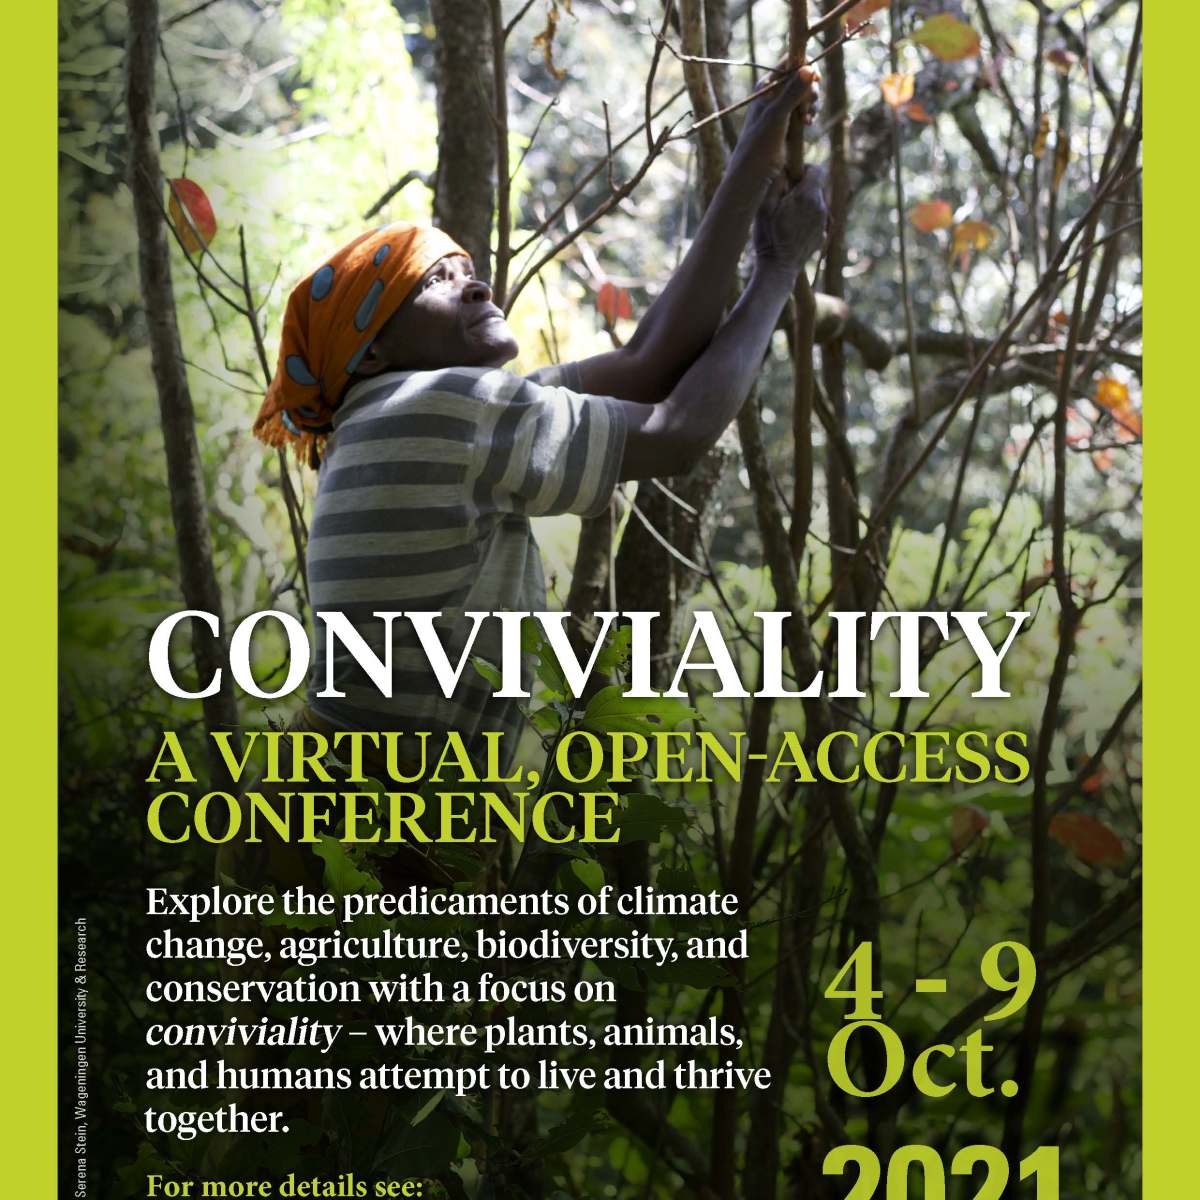 CONVIVIALITY – a virtual, open-access conference